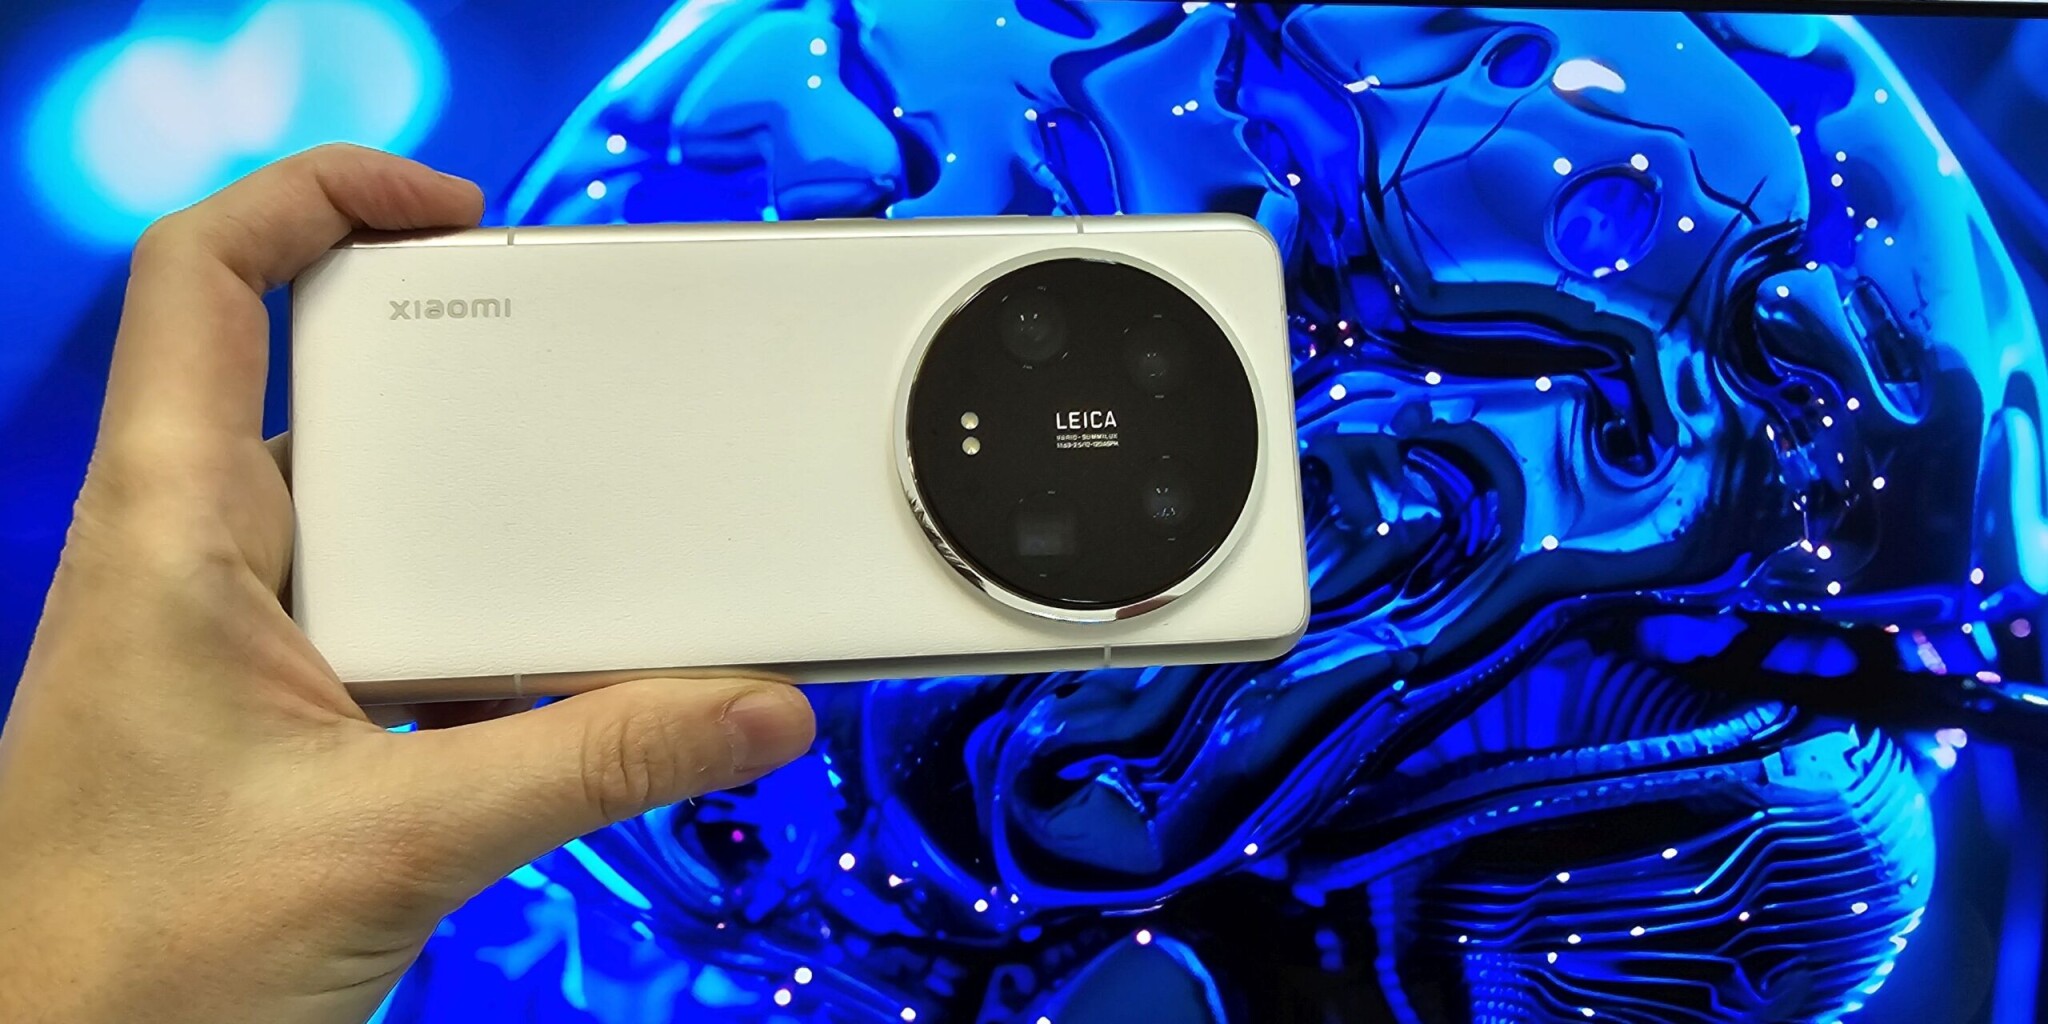 Xiaomi 14 Ultra 